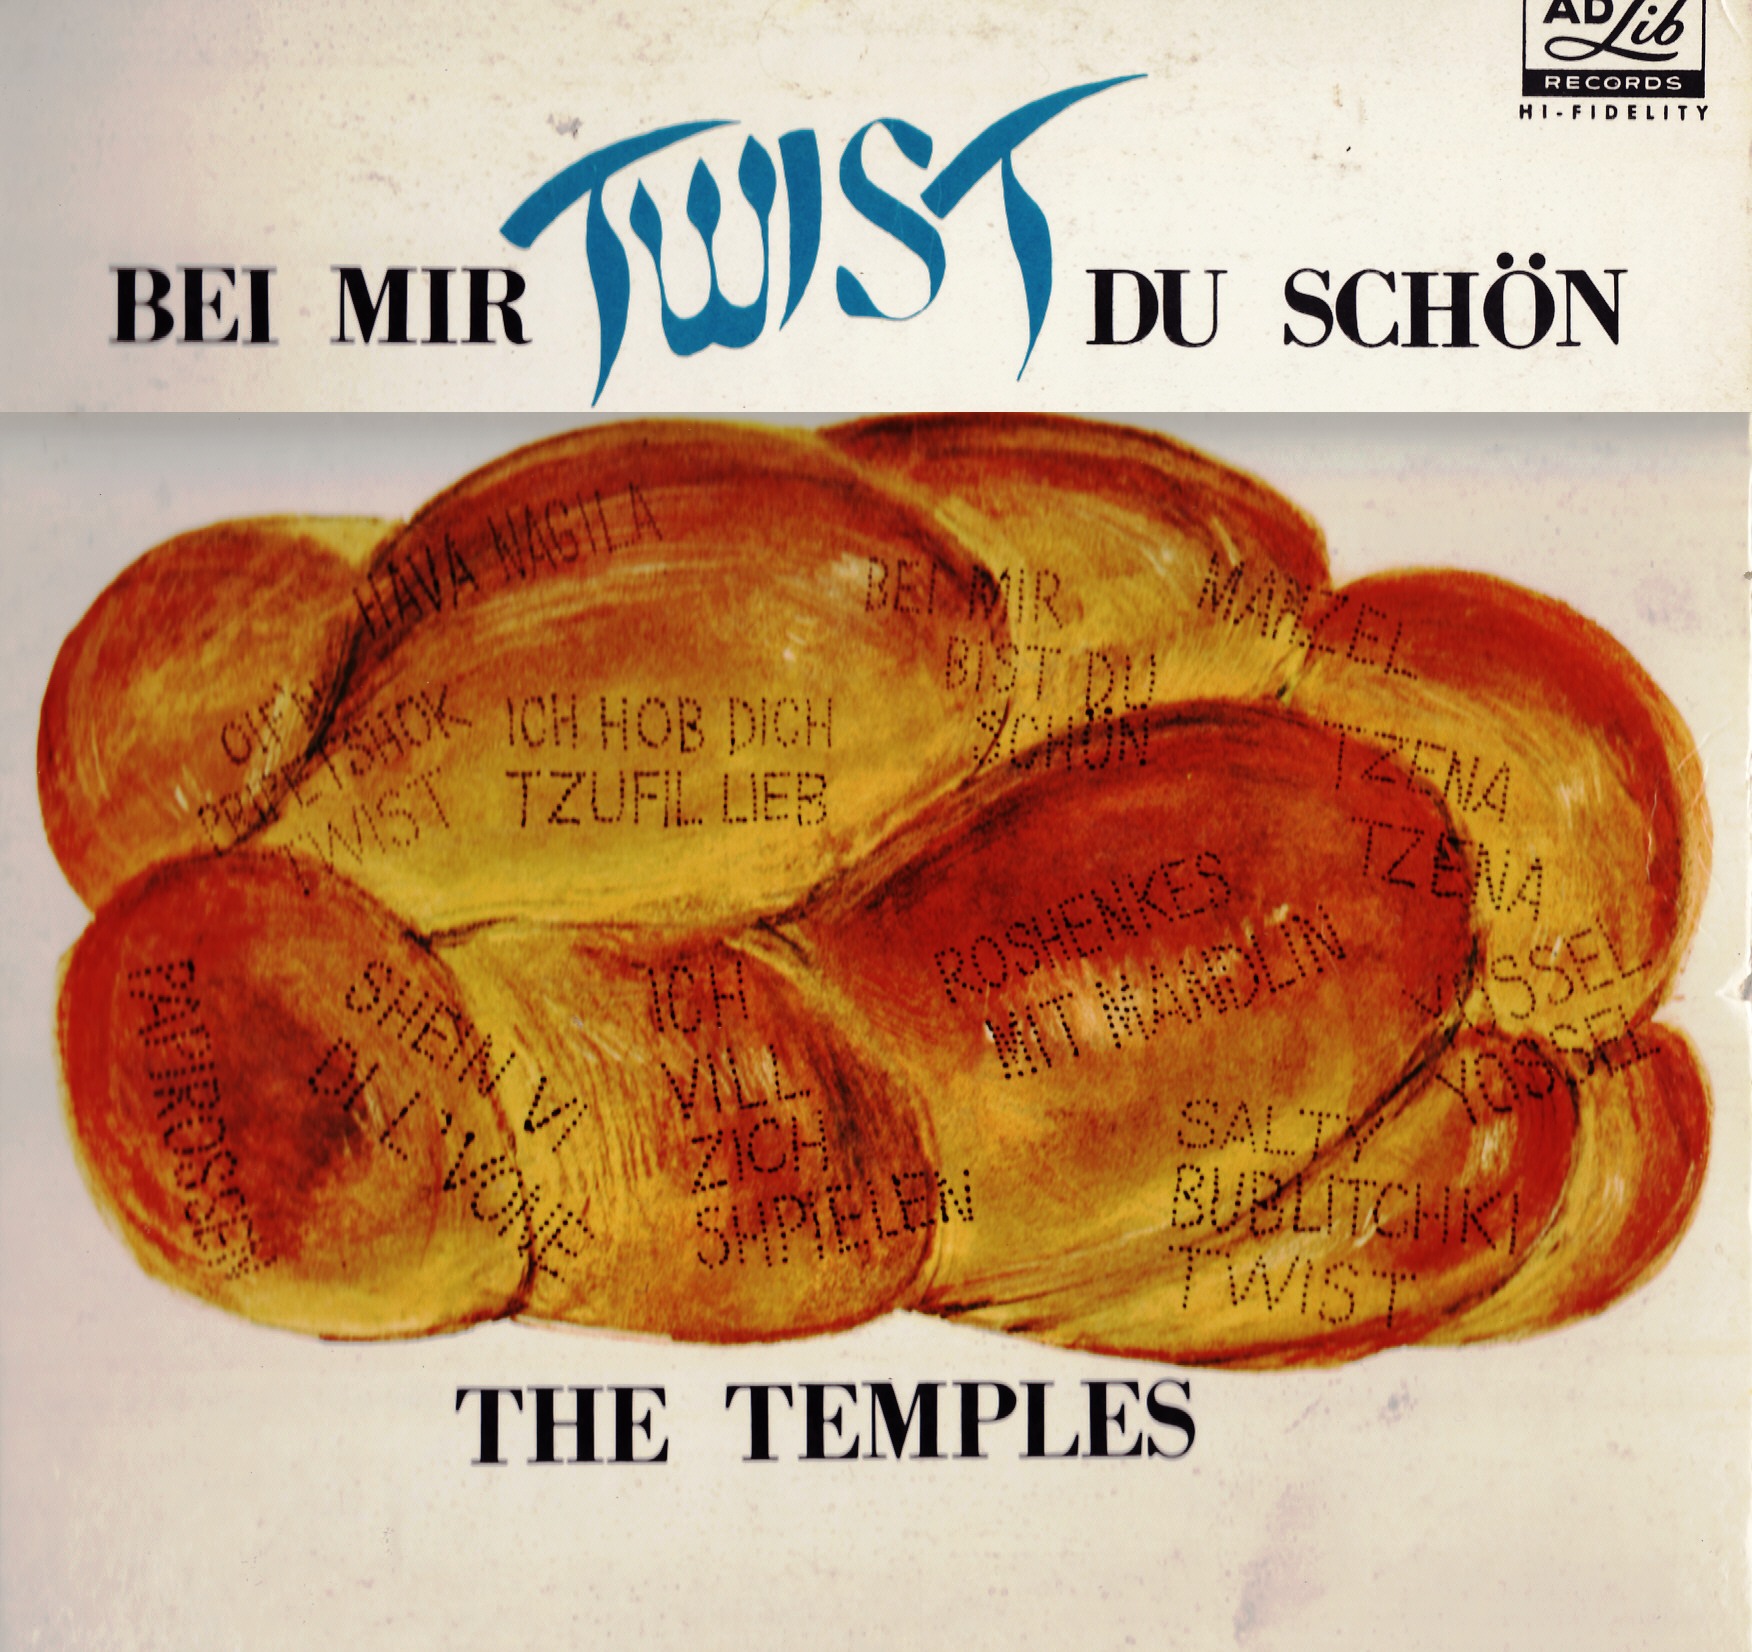 Mir schon. The Temples bei mir Twist du schön. Solomon Schwartz the Temples. The Temples bei mir Twist du schon 1963. Solomon Schwartz et son Orchestra.